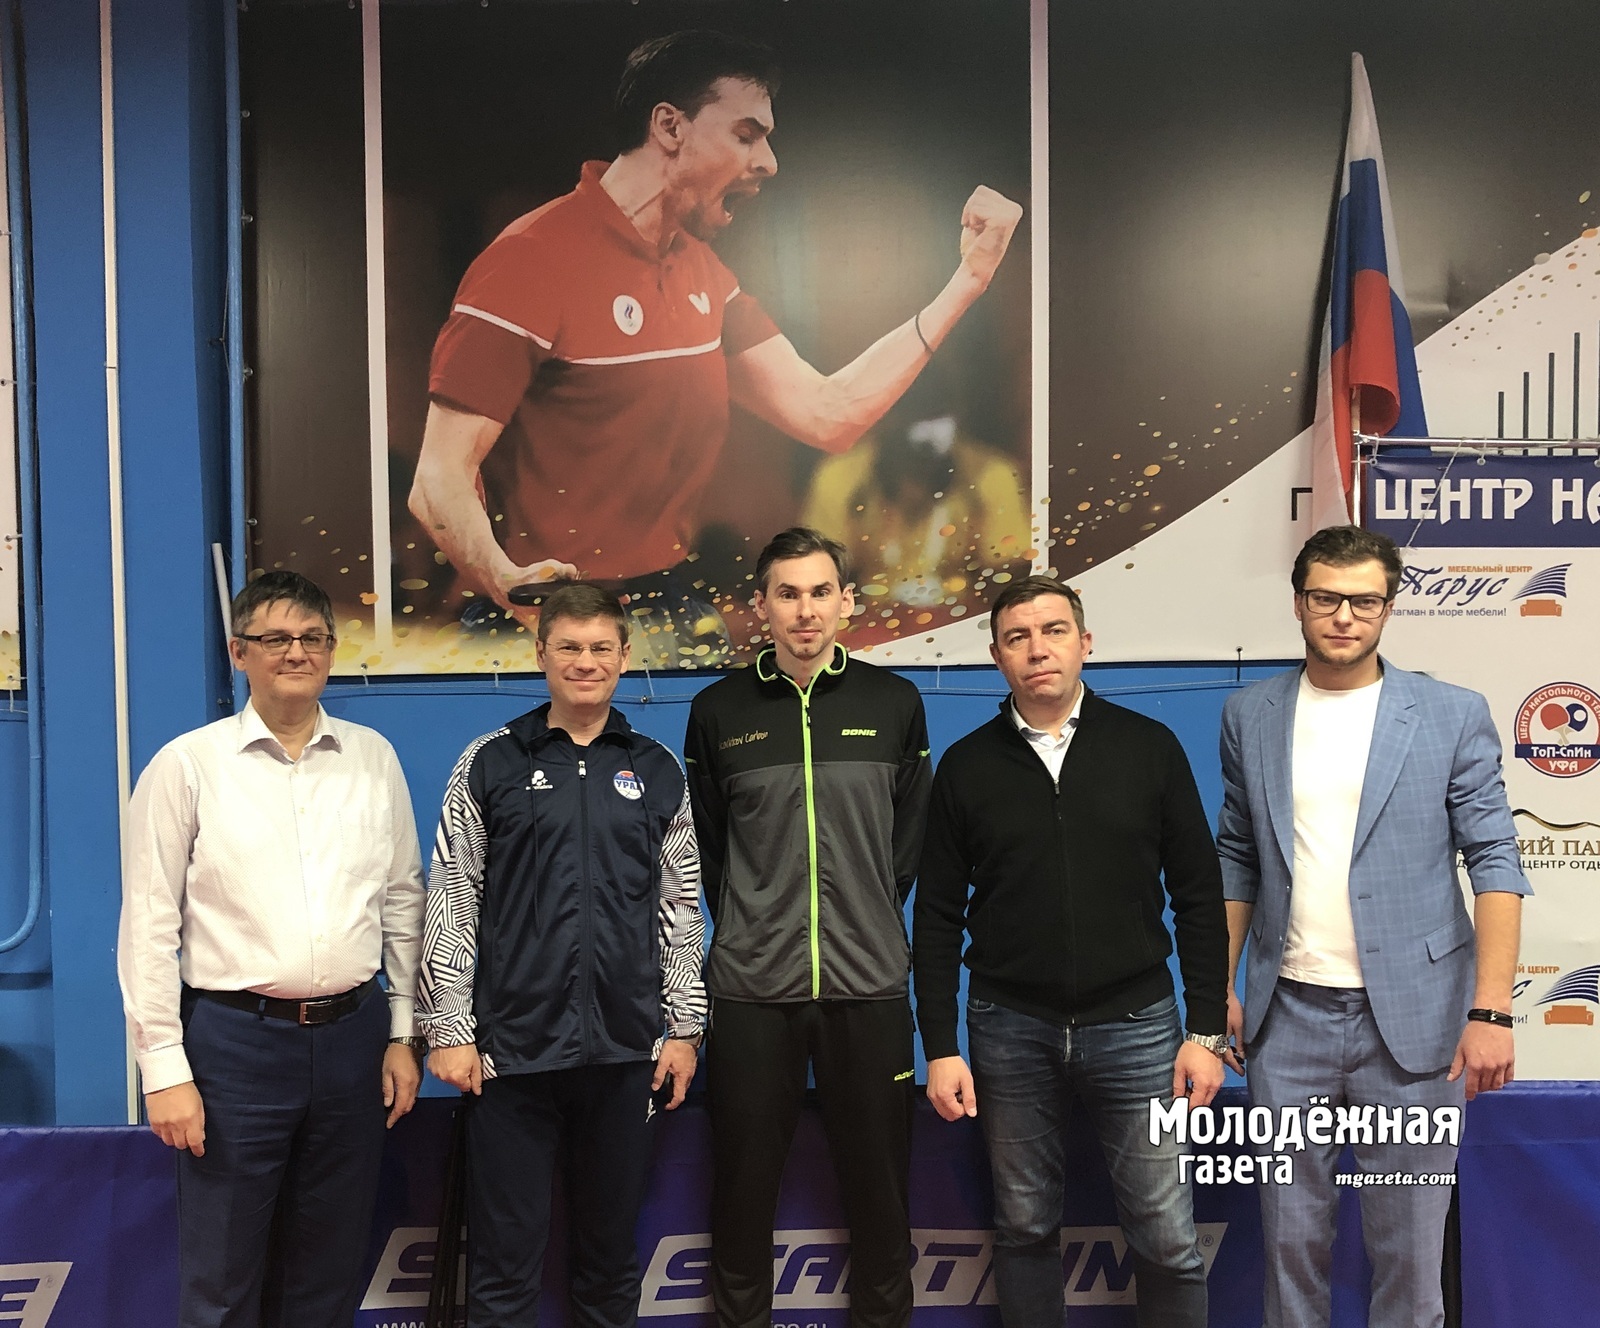 Около 20 команд участвуют в соревнованиях по настольному теннису среди предприятий Башкирии